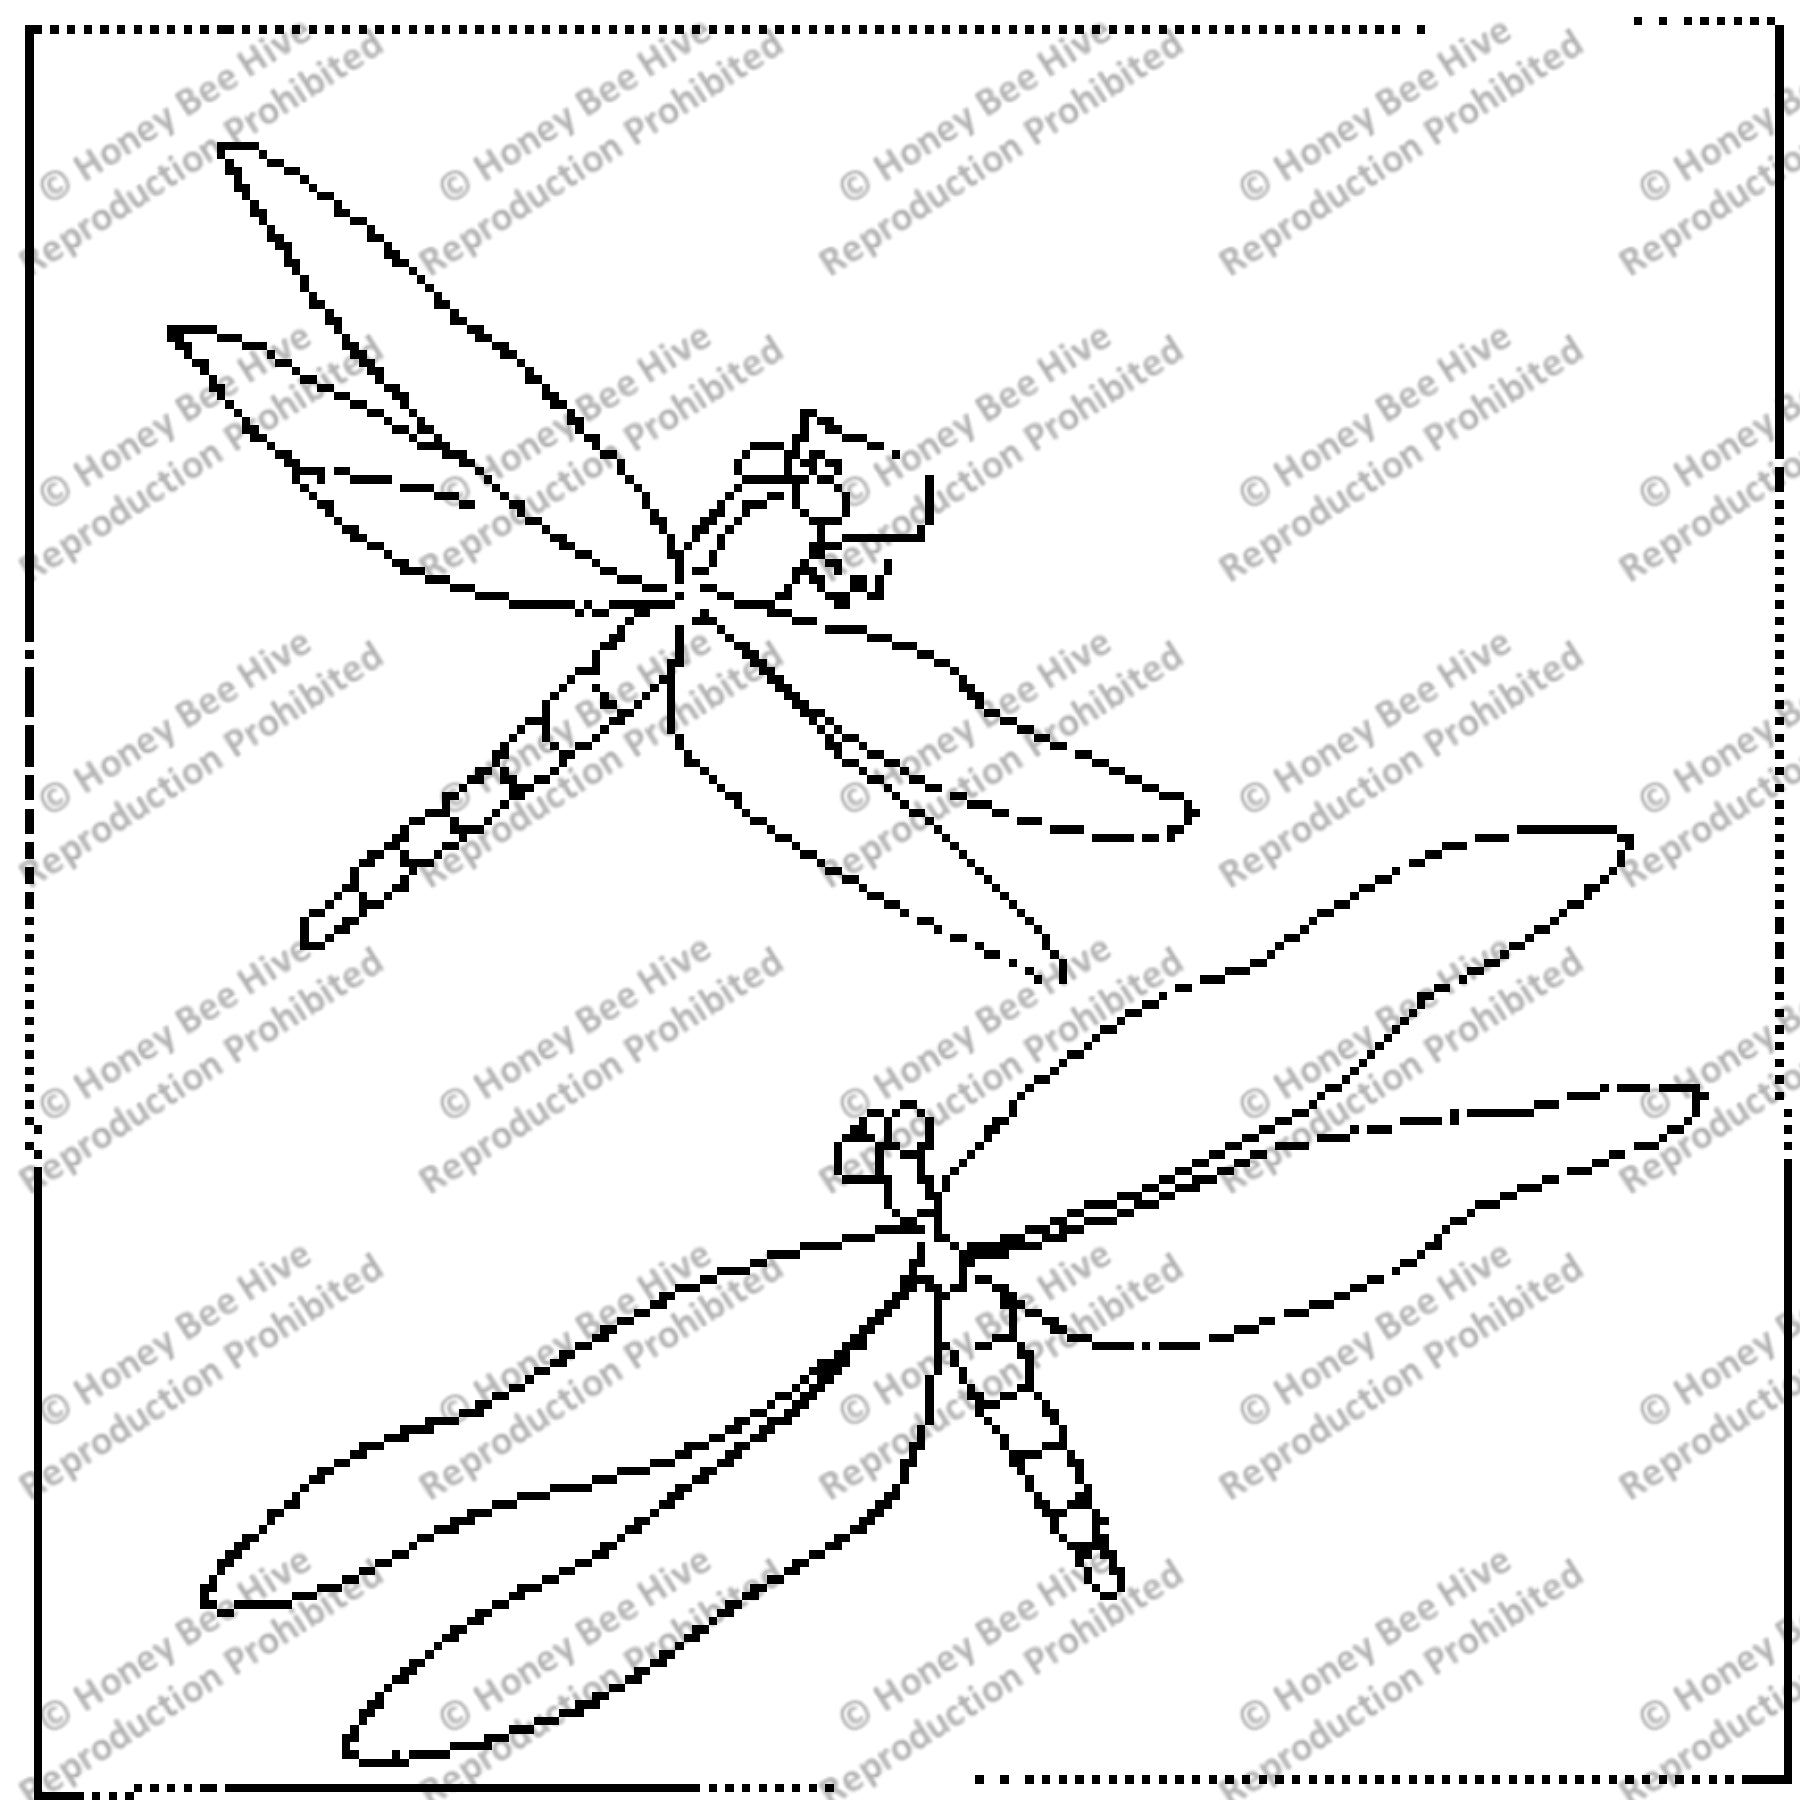 Dragonflies, rug hooking pattern